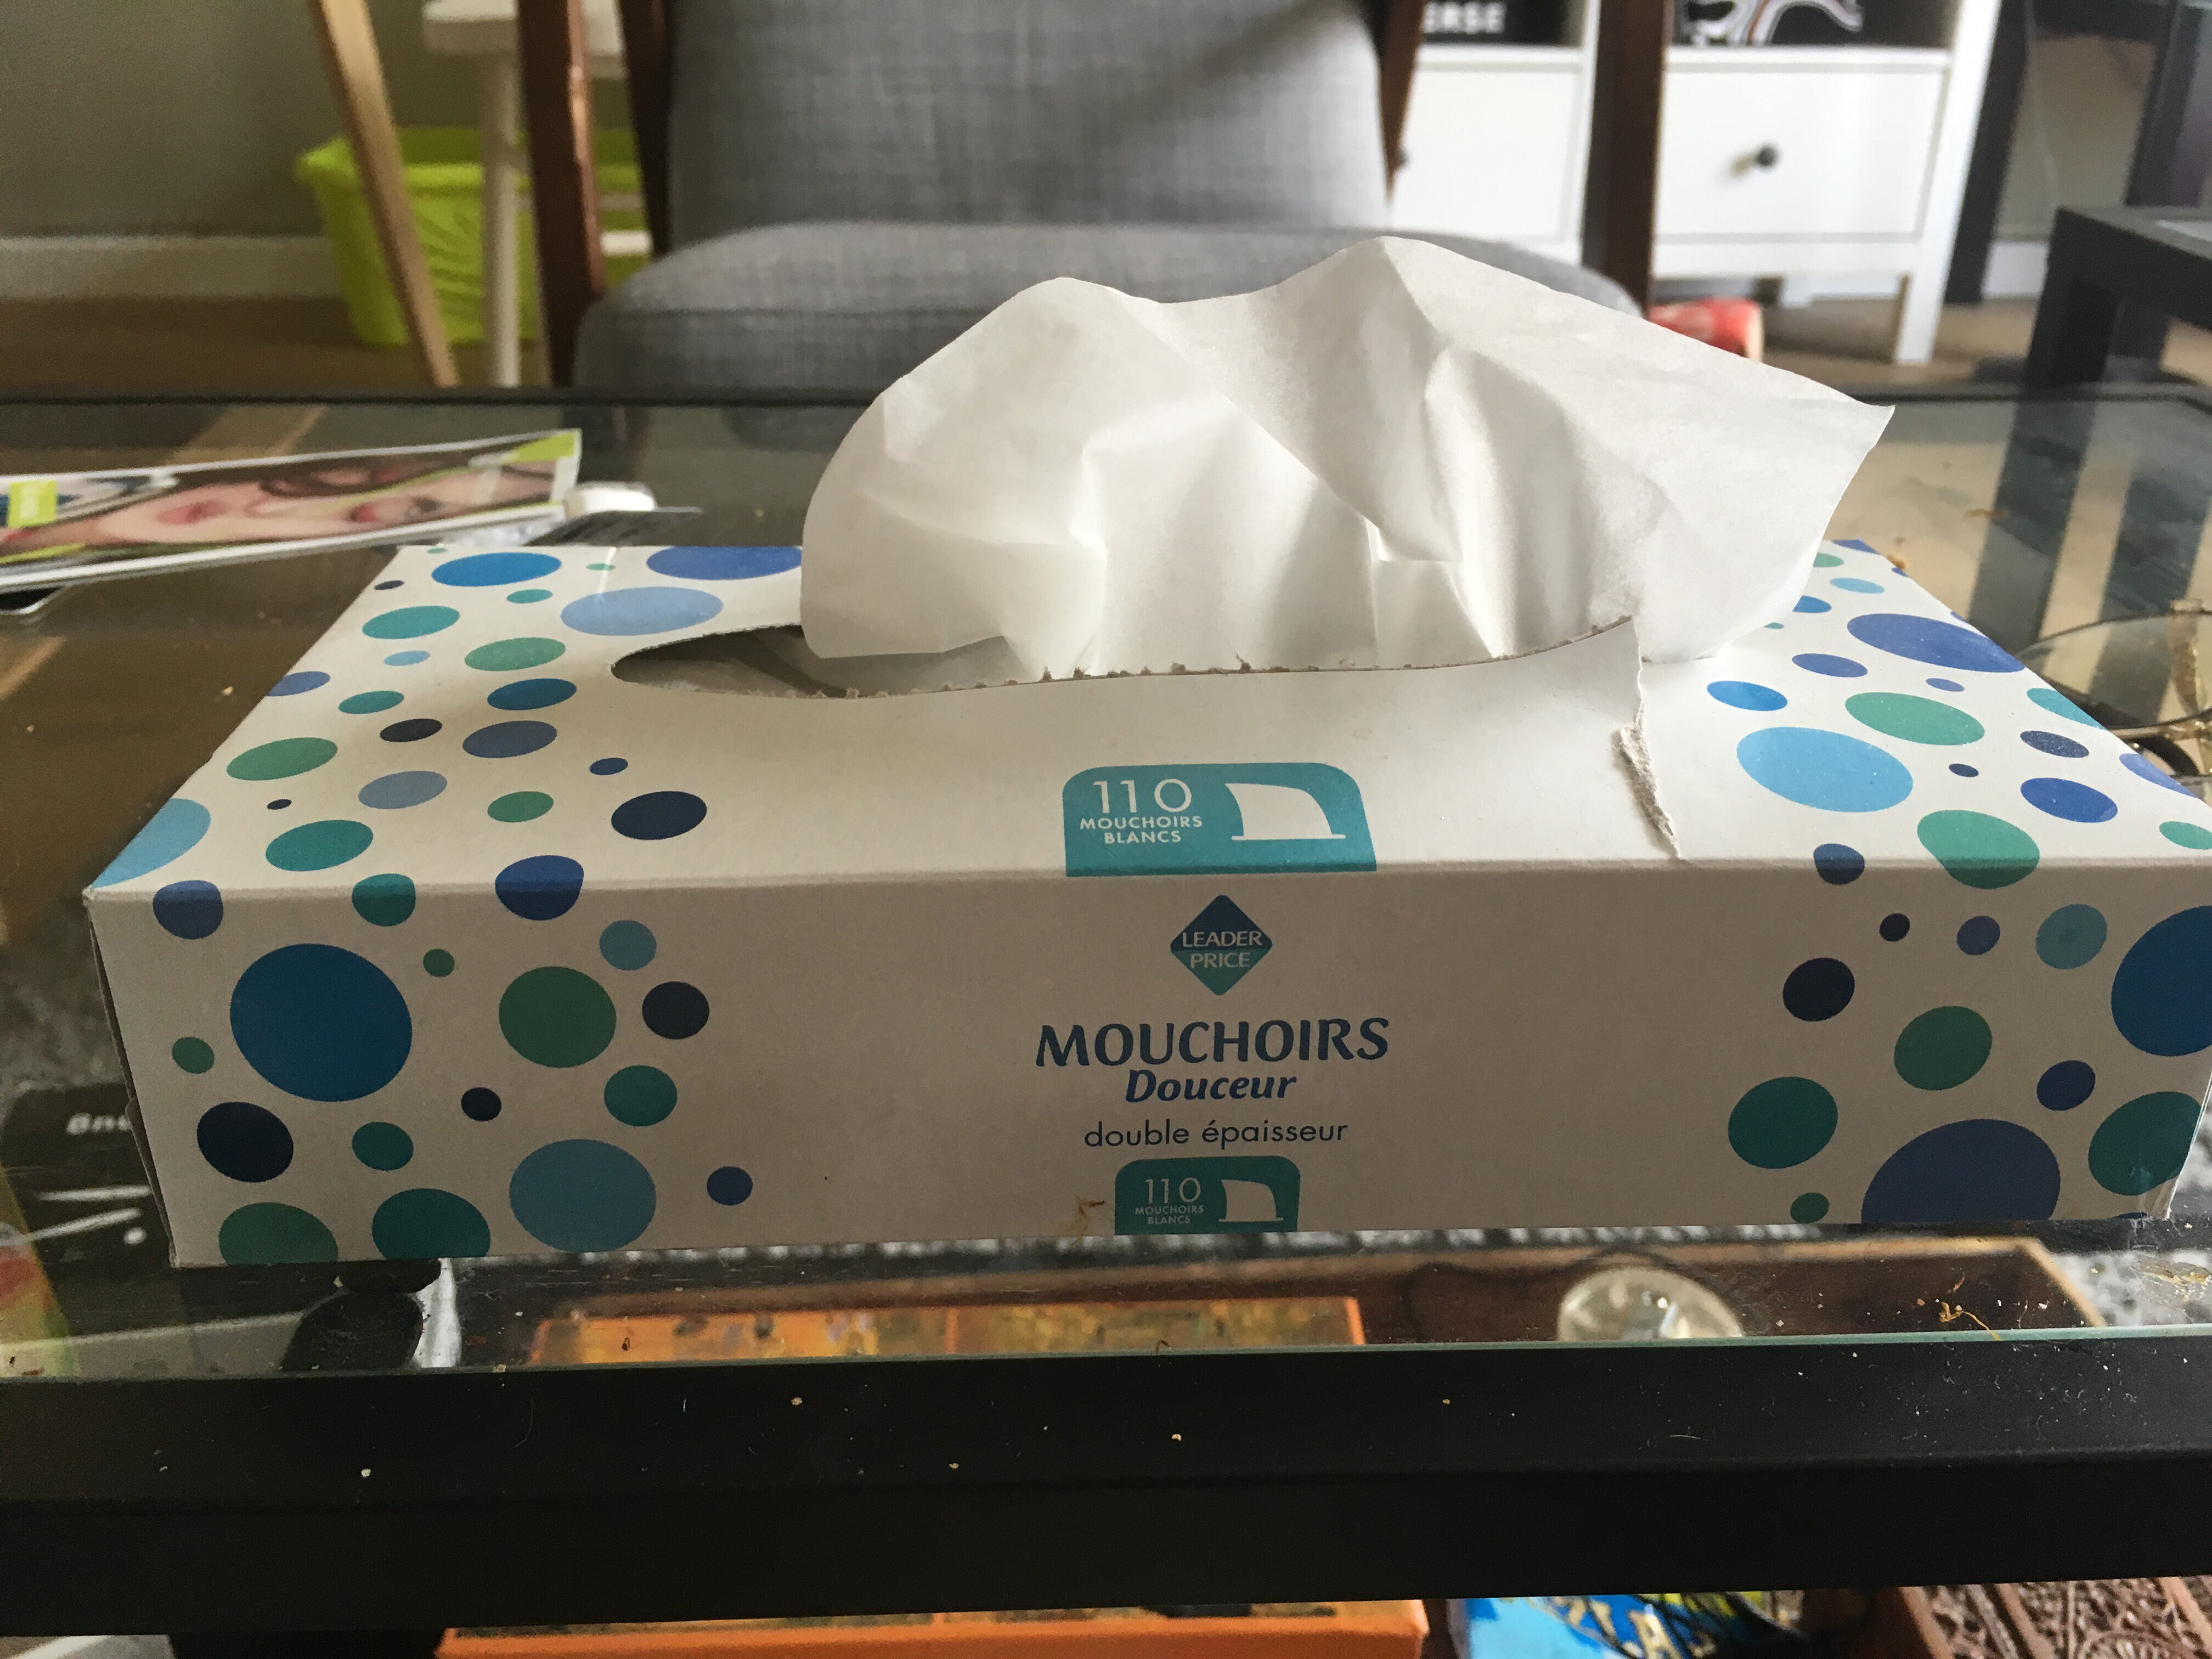 Mouchoir douceur - Product - fr